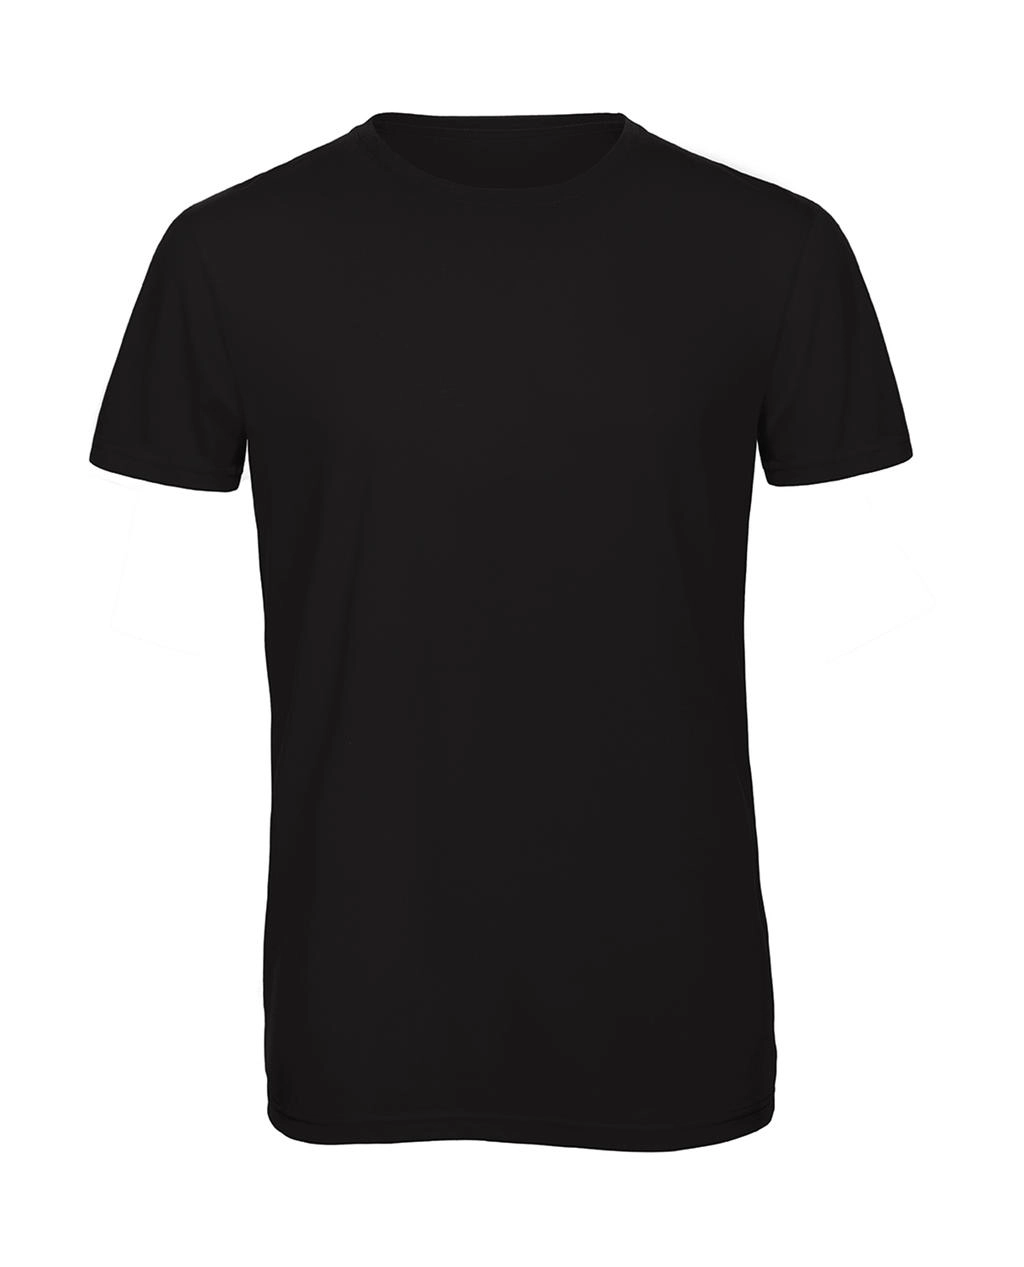 Triblend/men T-Shirt zum Besticken und Bedrucken in der Farbe Black mit Ihren Logo, Schriftzug oder Motiv.